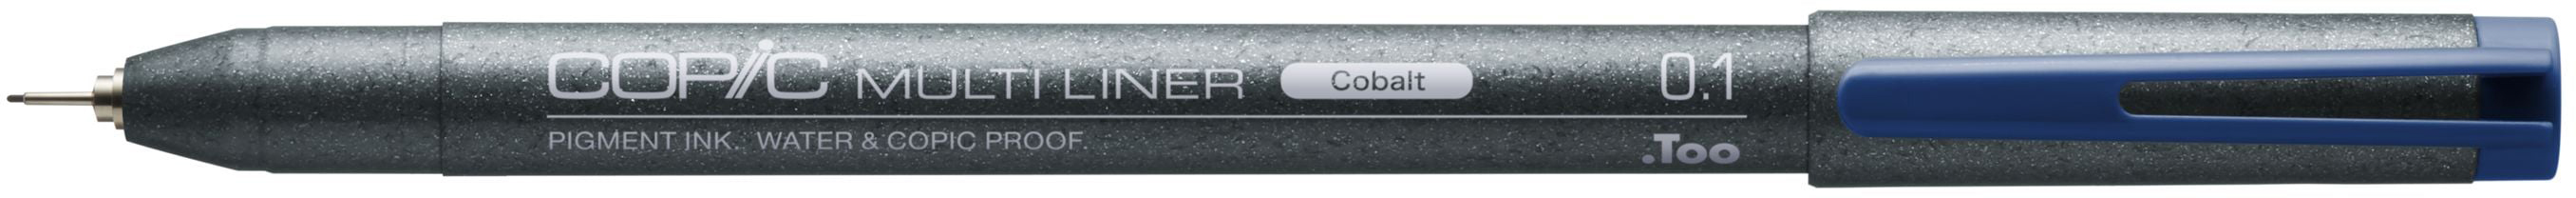 COPIC Multiliner 0.1mm 22075532 cobalt